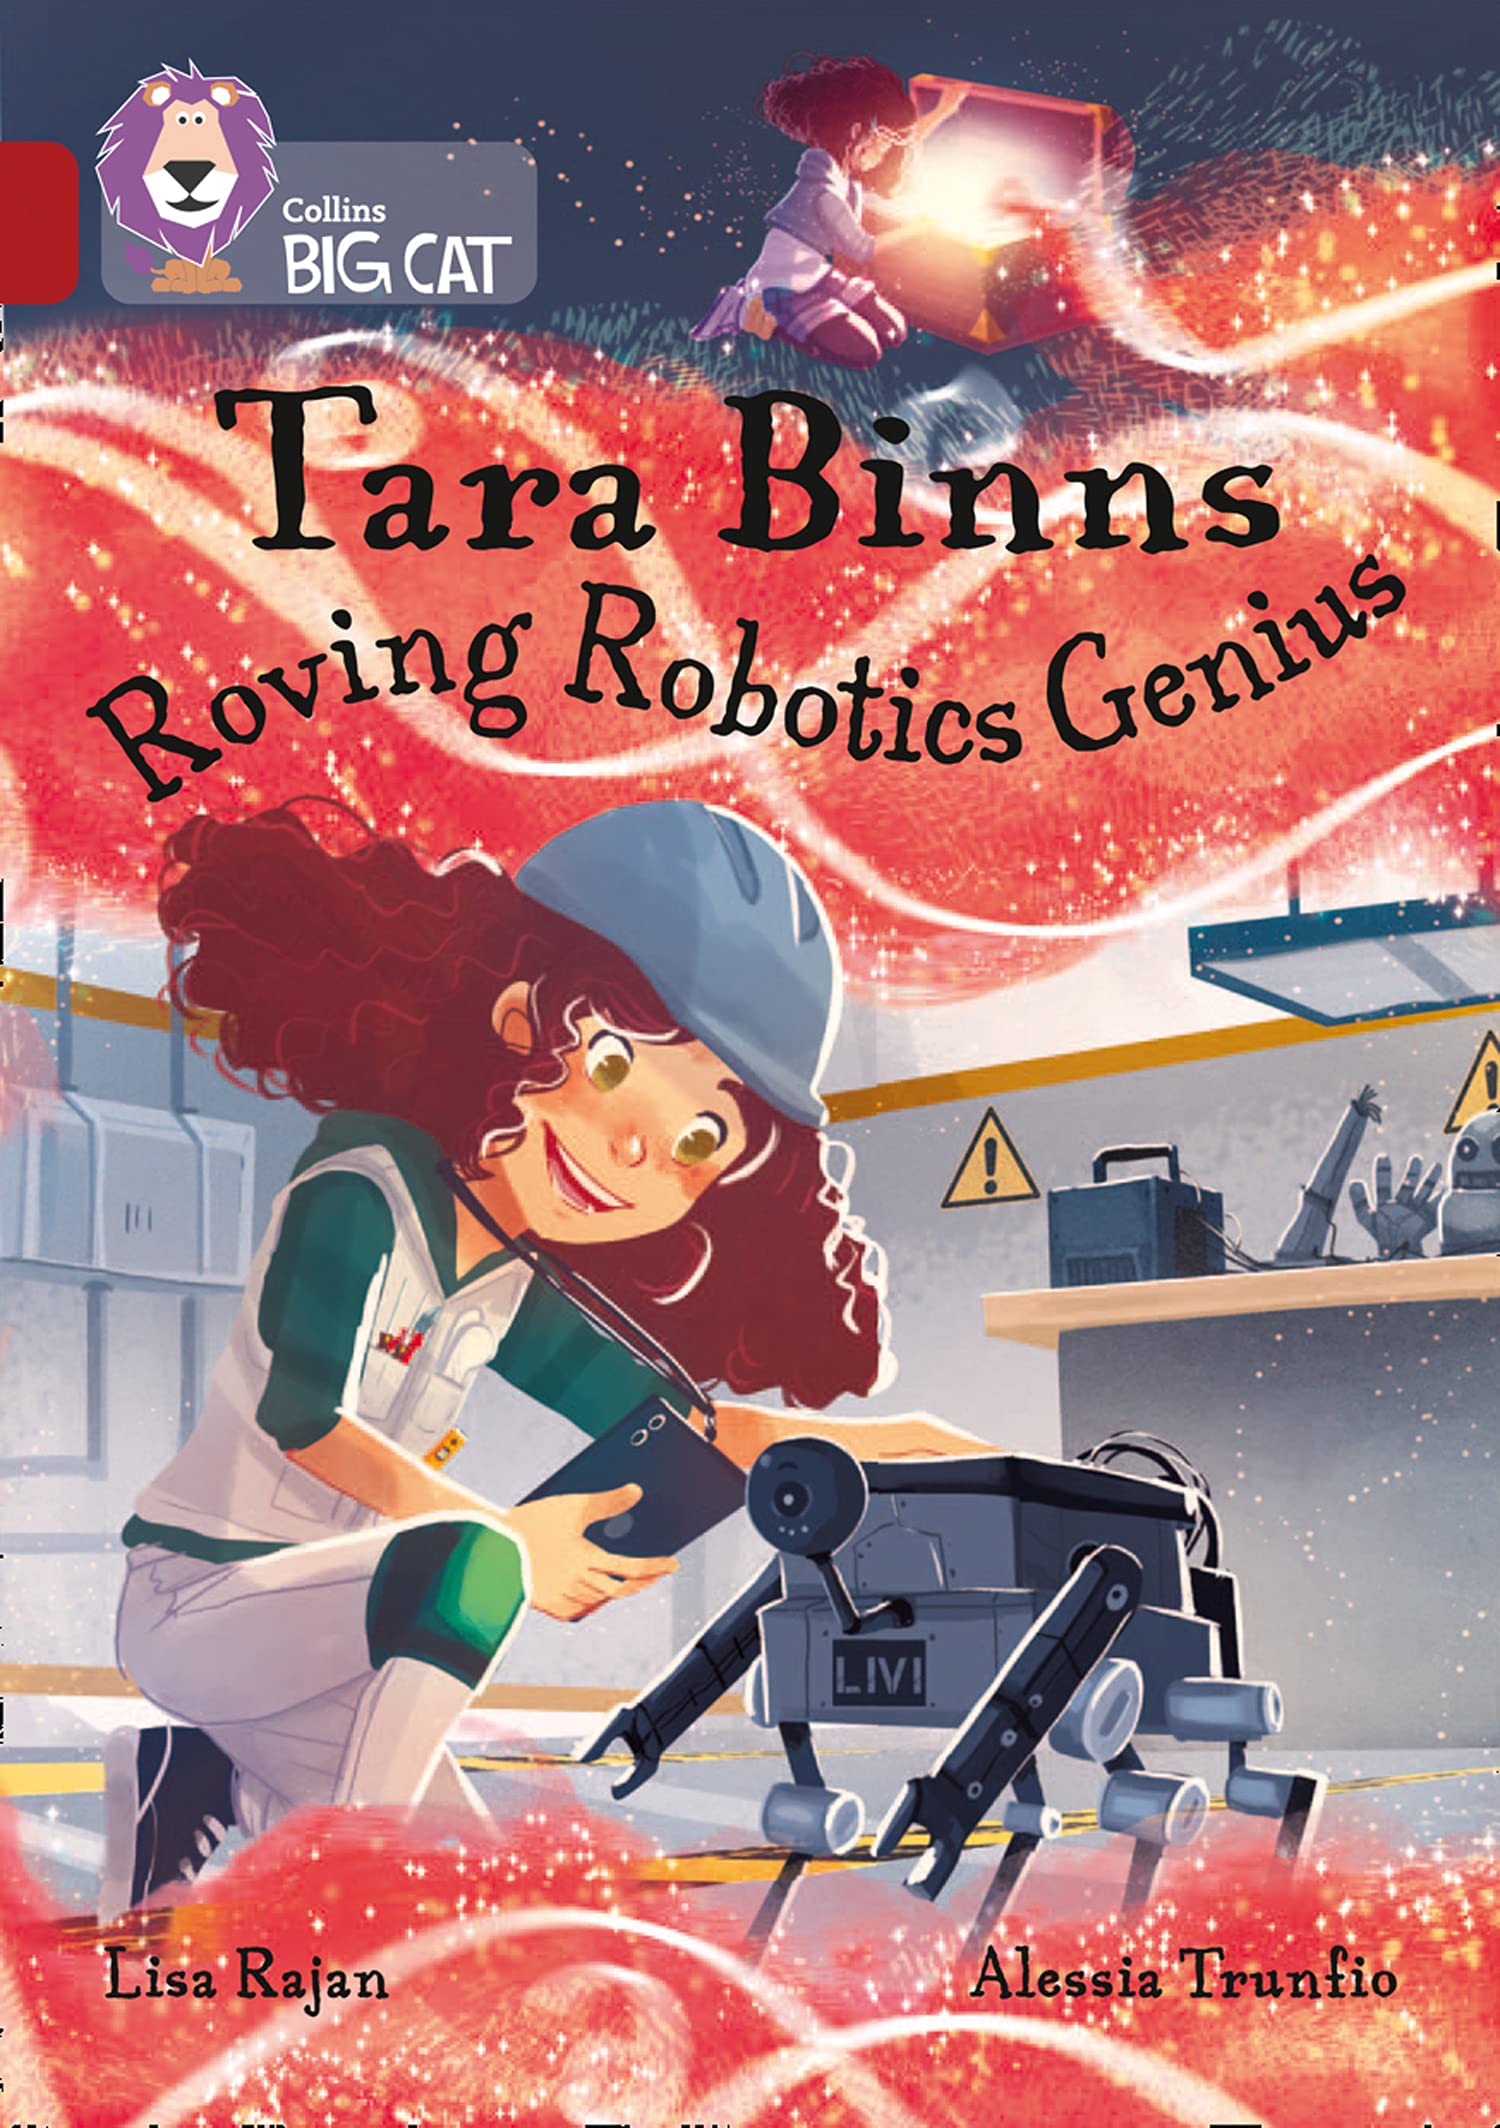 Tara Binns: Book 3